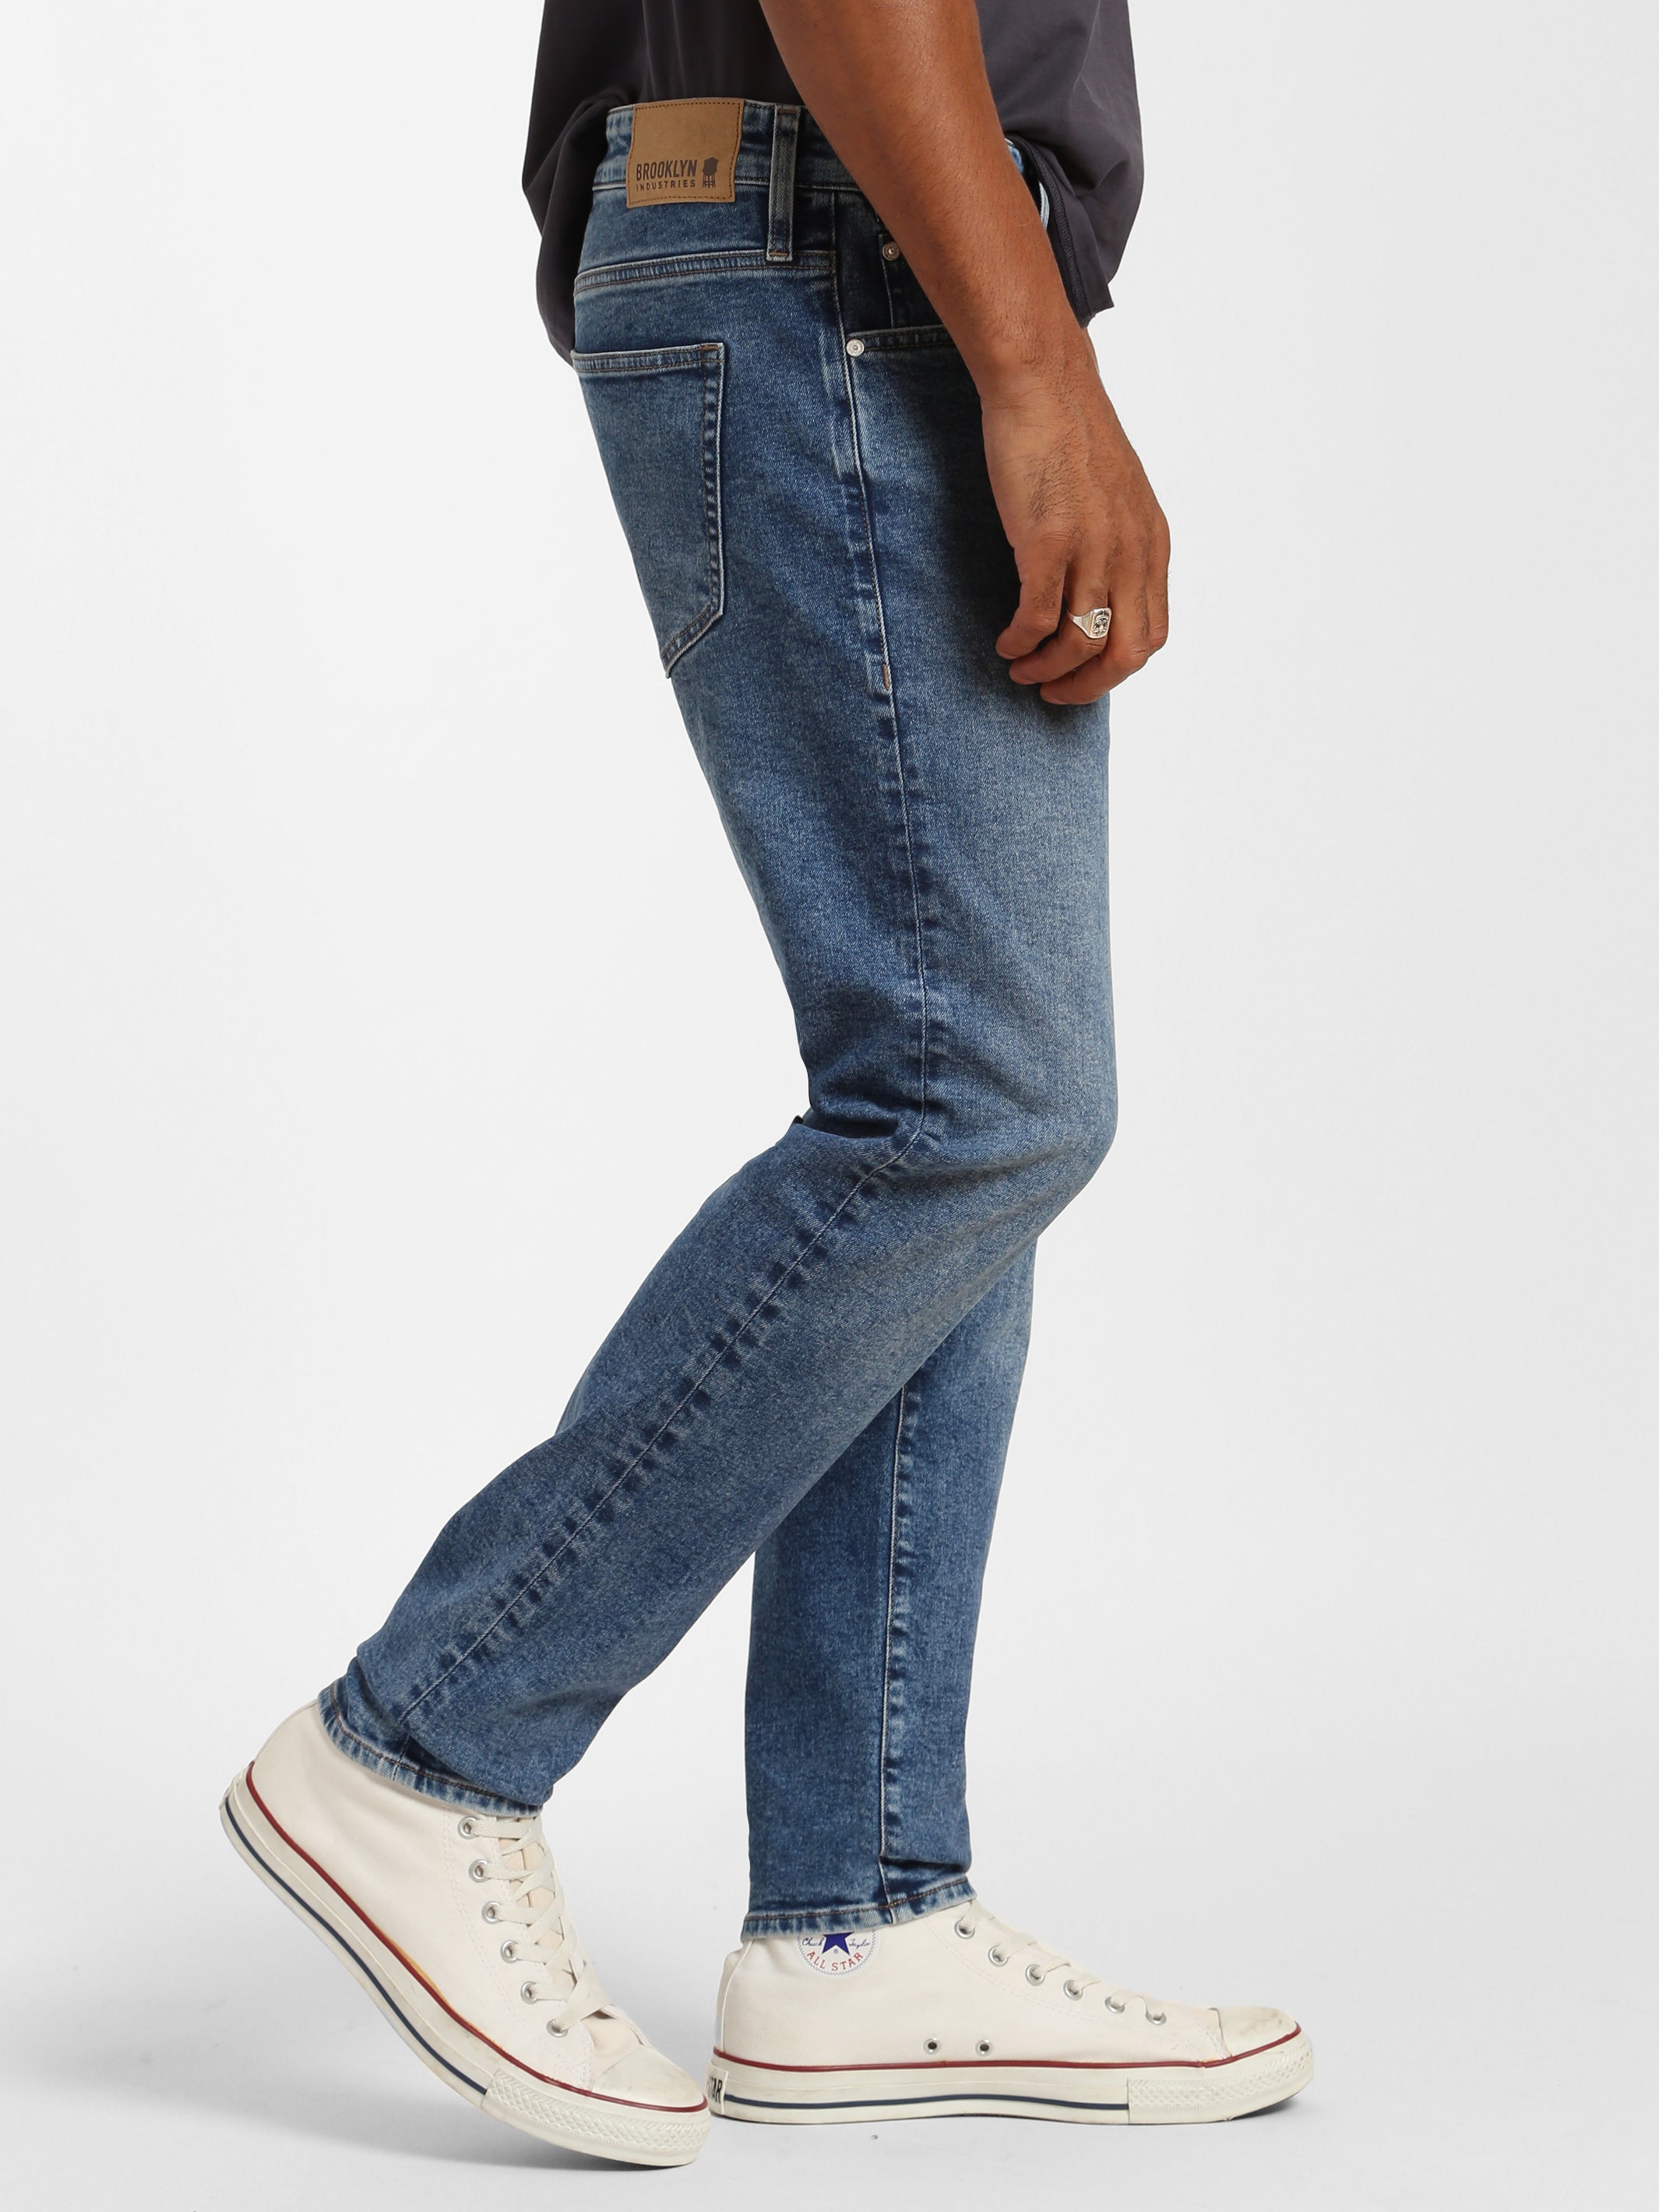 Clark Skinny Jeans in Indigo Vintage - BROOKLYN INDUSTRIES